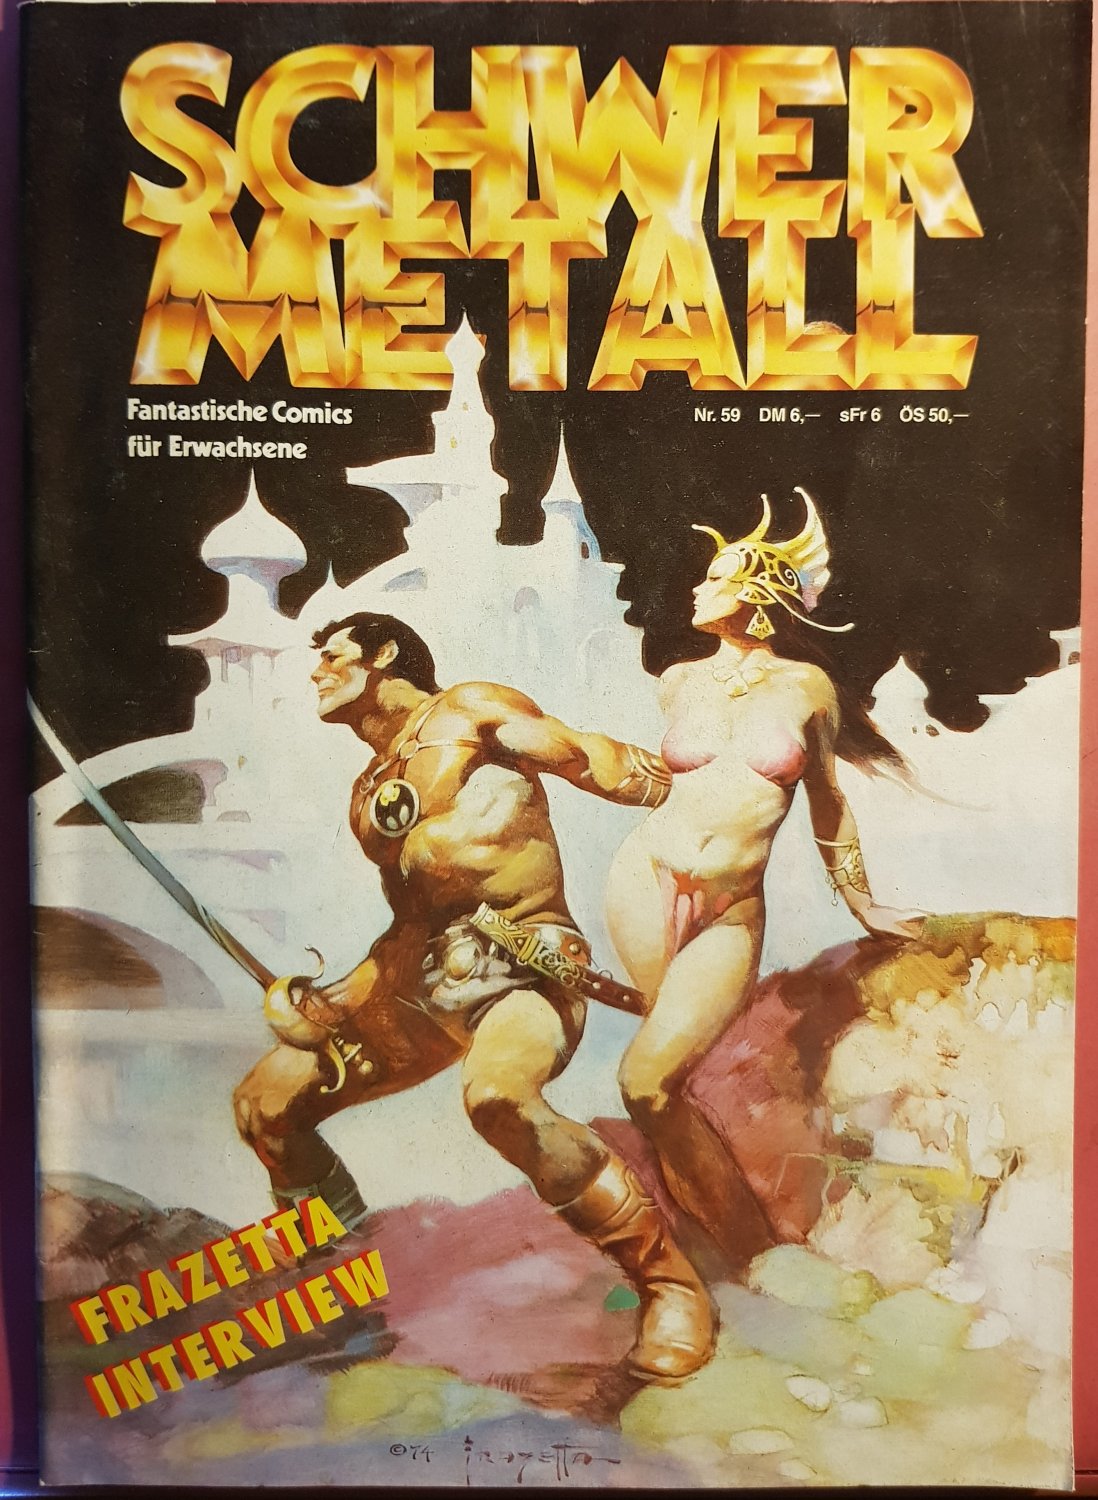 Fantastische Comics für Erwachsene Schwermetall Magazin 112 TOP-Zustand